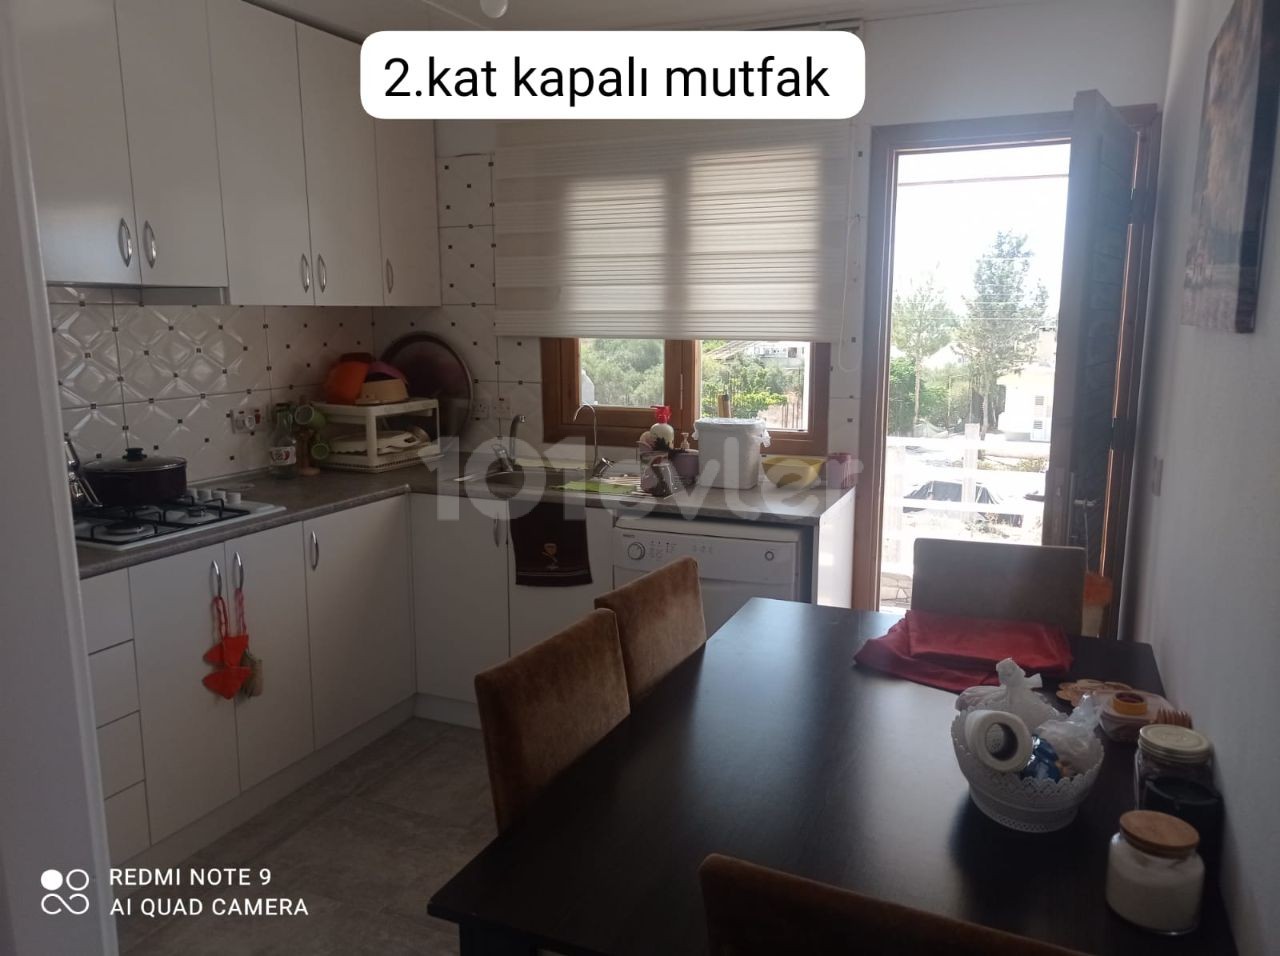 3 Einfamilienhäuser zum Verkauf in der Gegend von Alayköy werden nicht separat verkauft